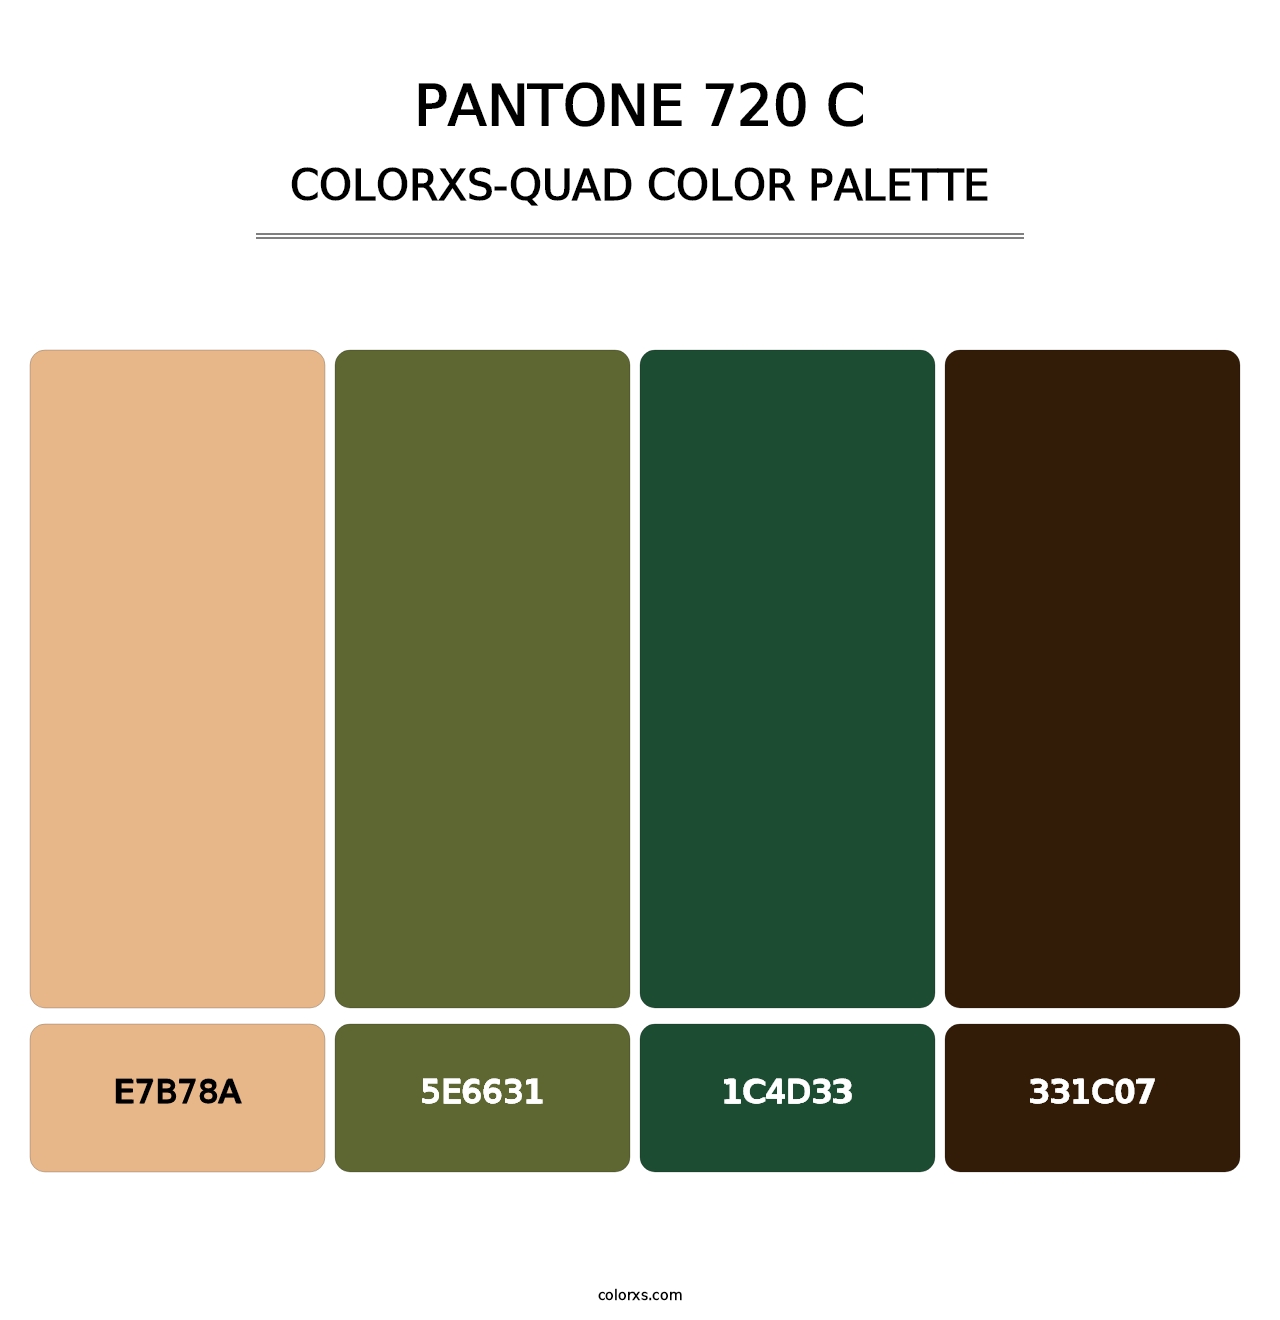 PANTONE 720 C - Colorxs Quad Palette